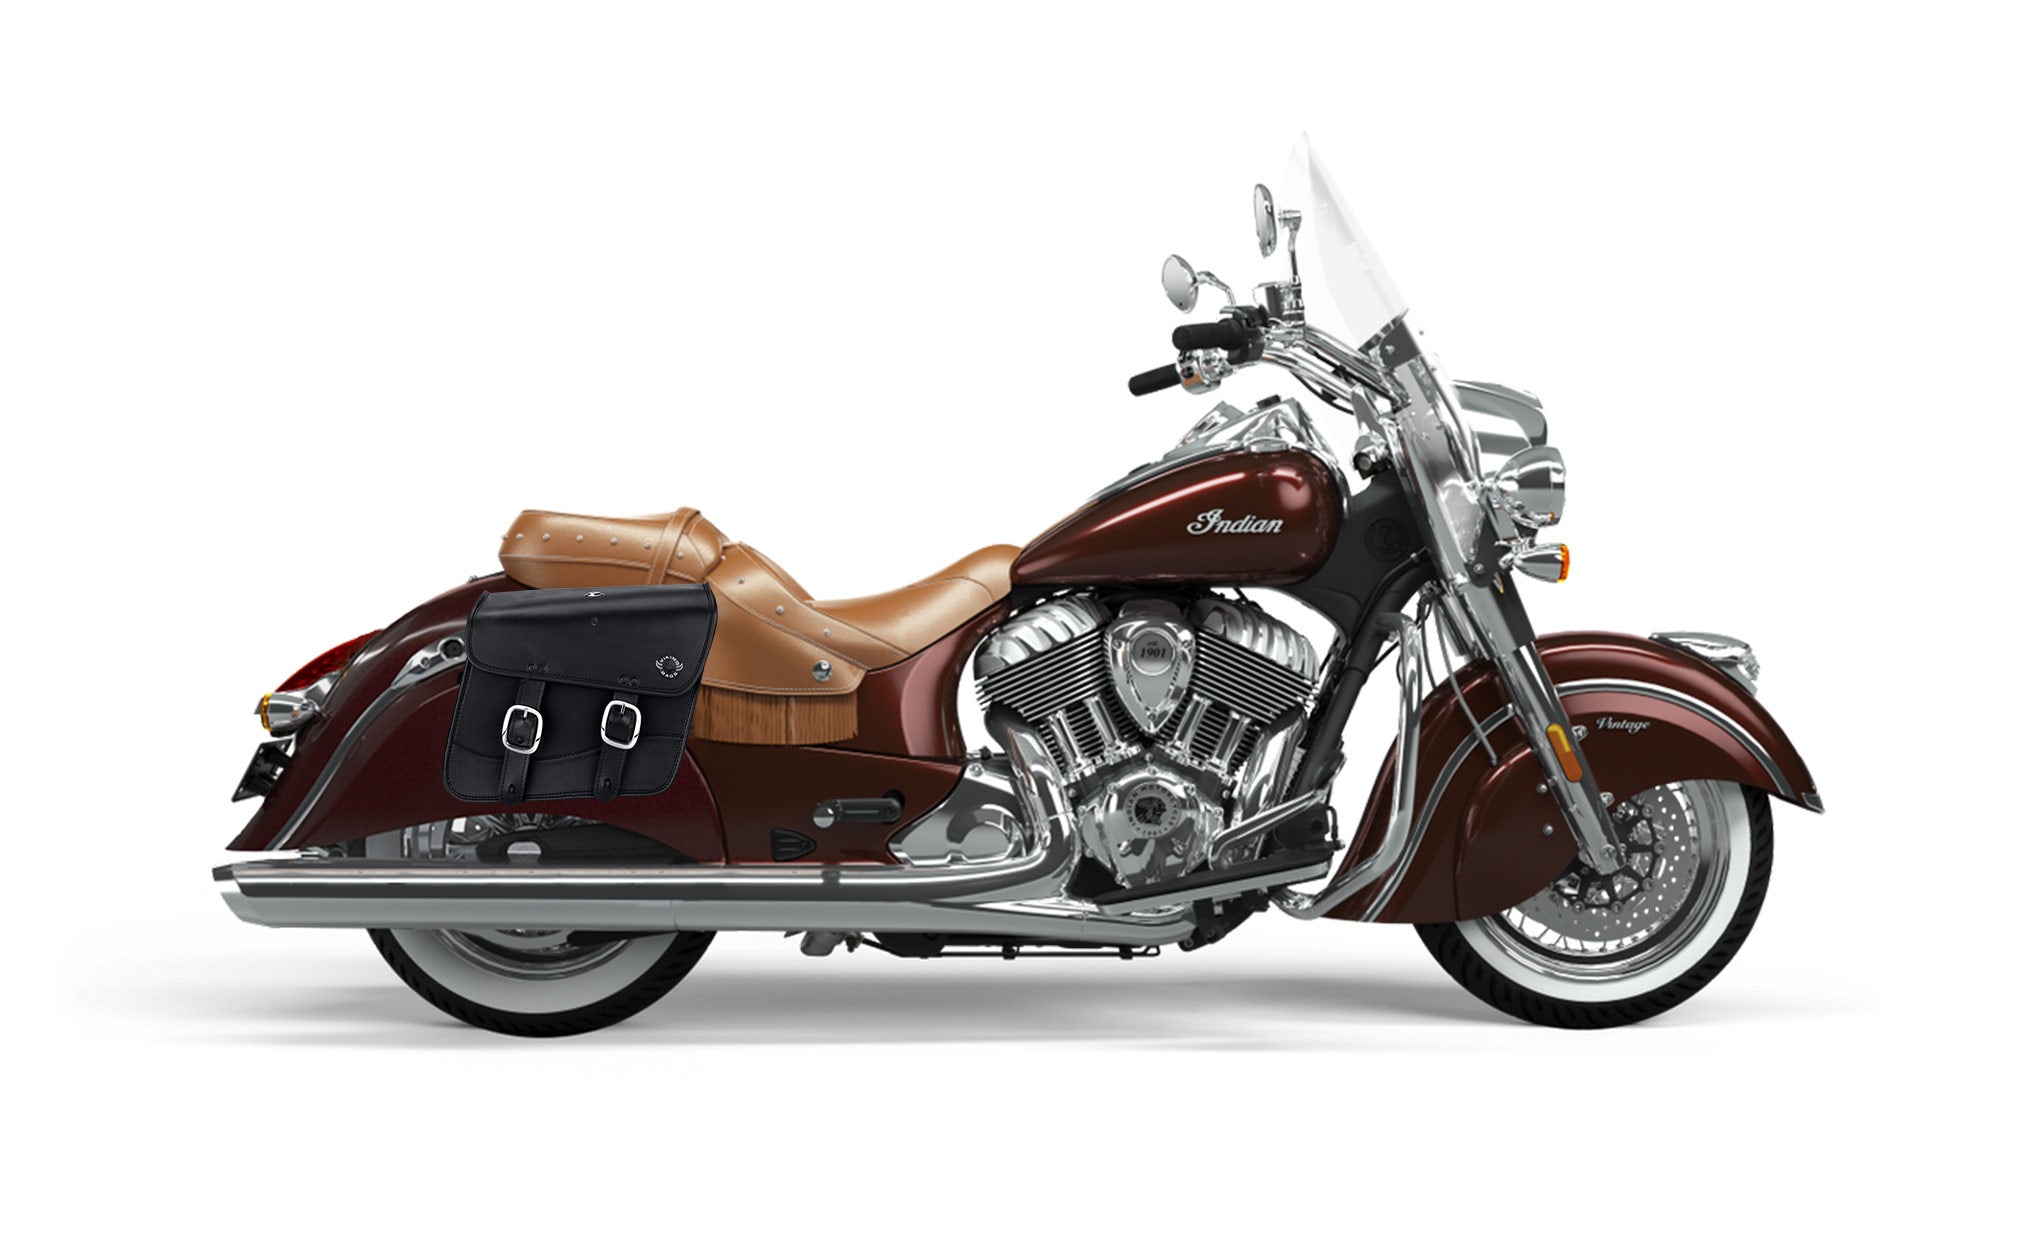 Viking Thor Medium Indian Vintage Leather Motorcycle Saddlebags on Bike Photo @expand